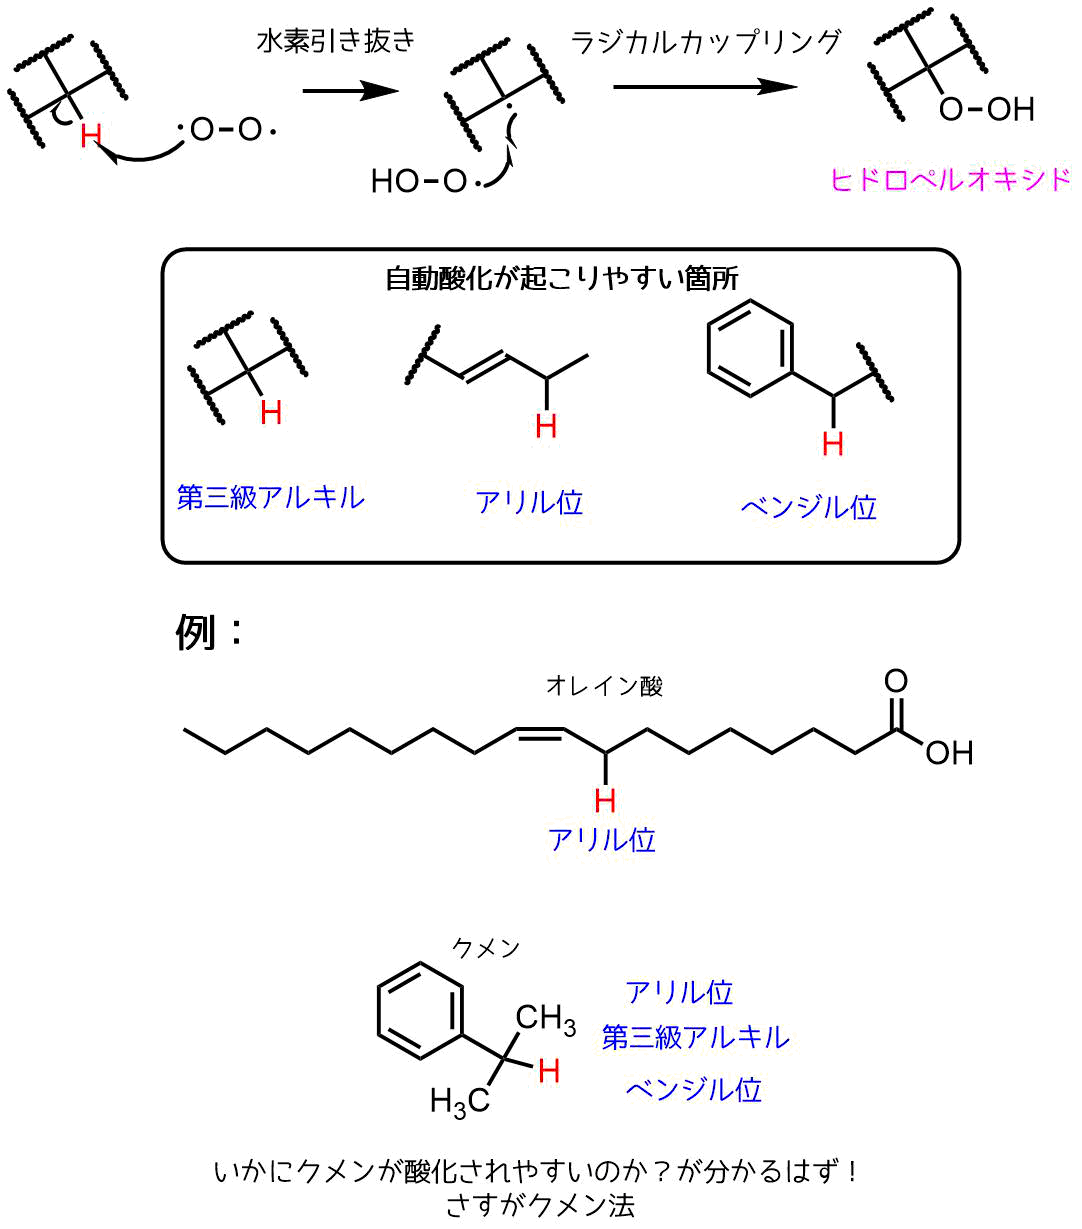 ヒドロペルオキシドの合成法ー自動酸化